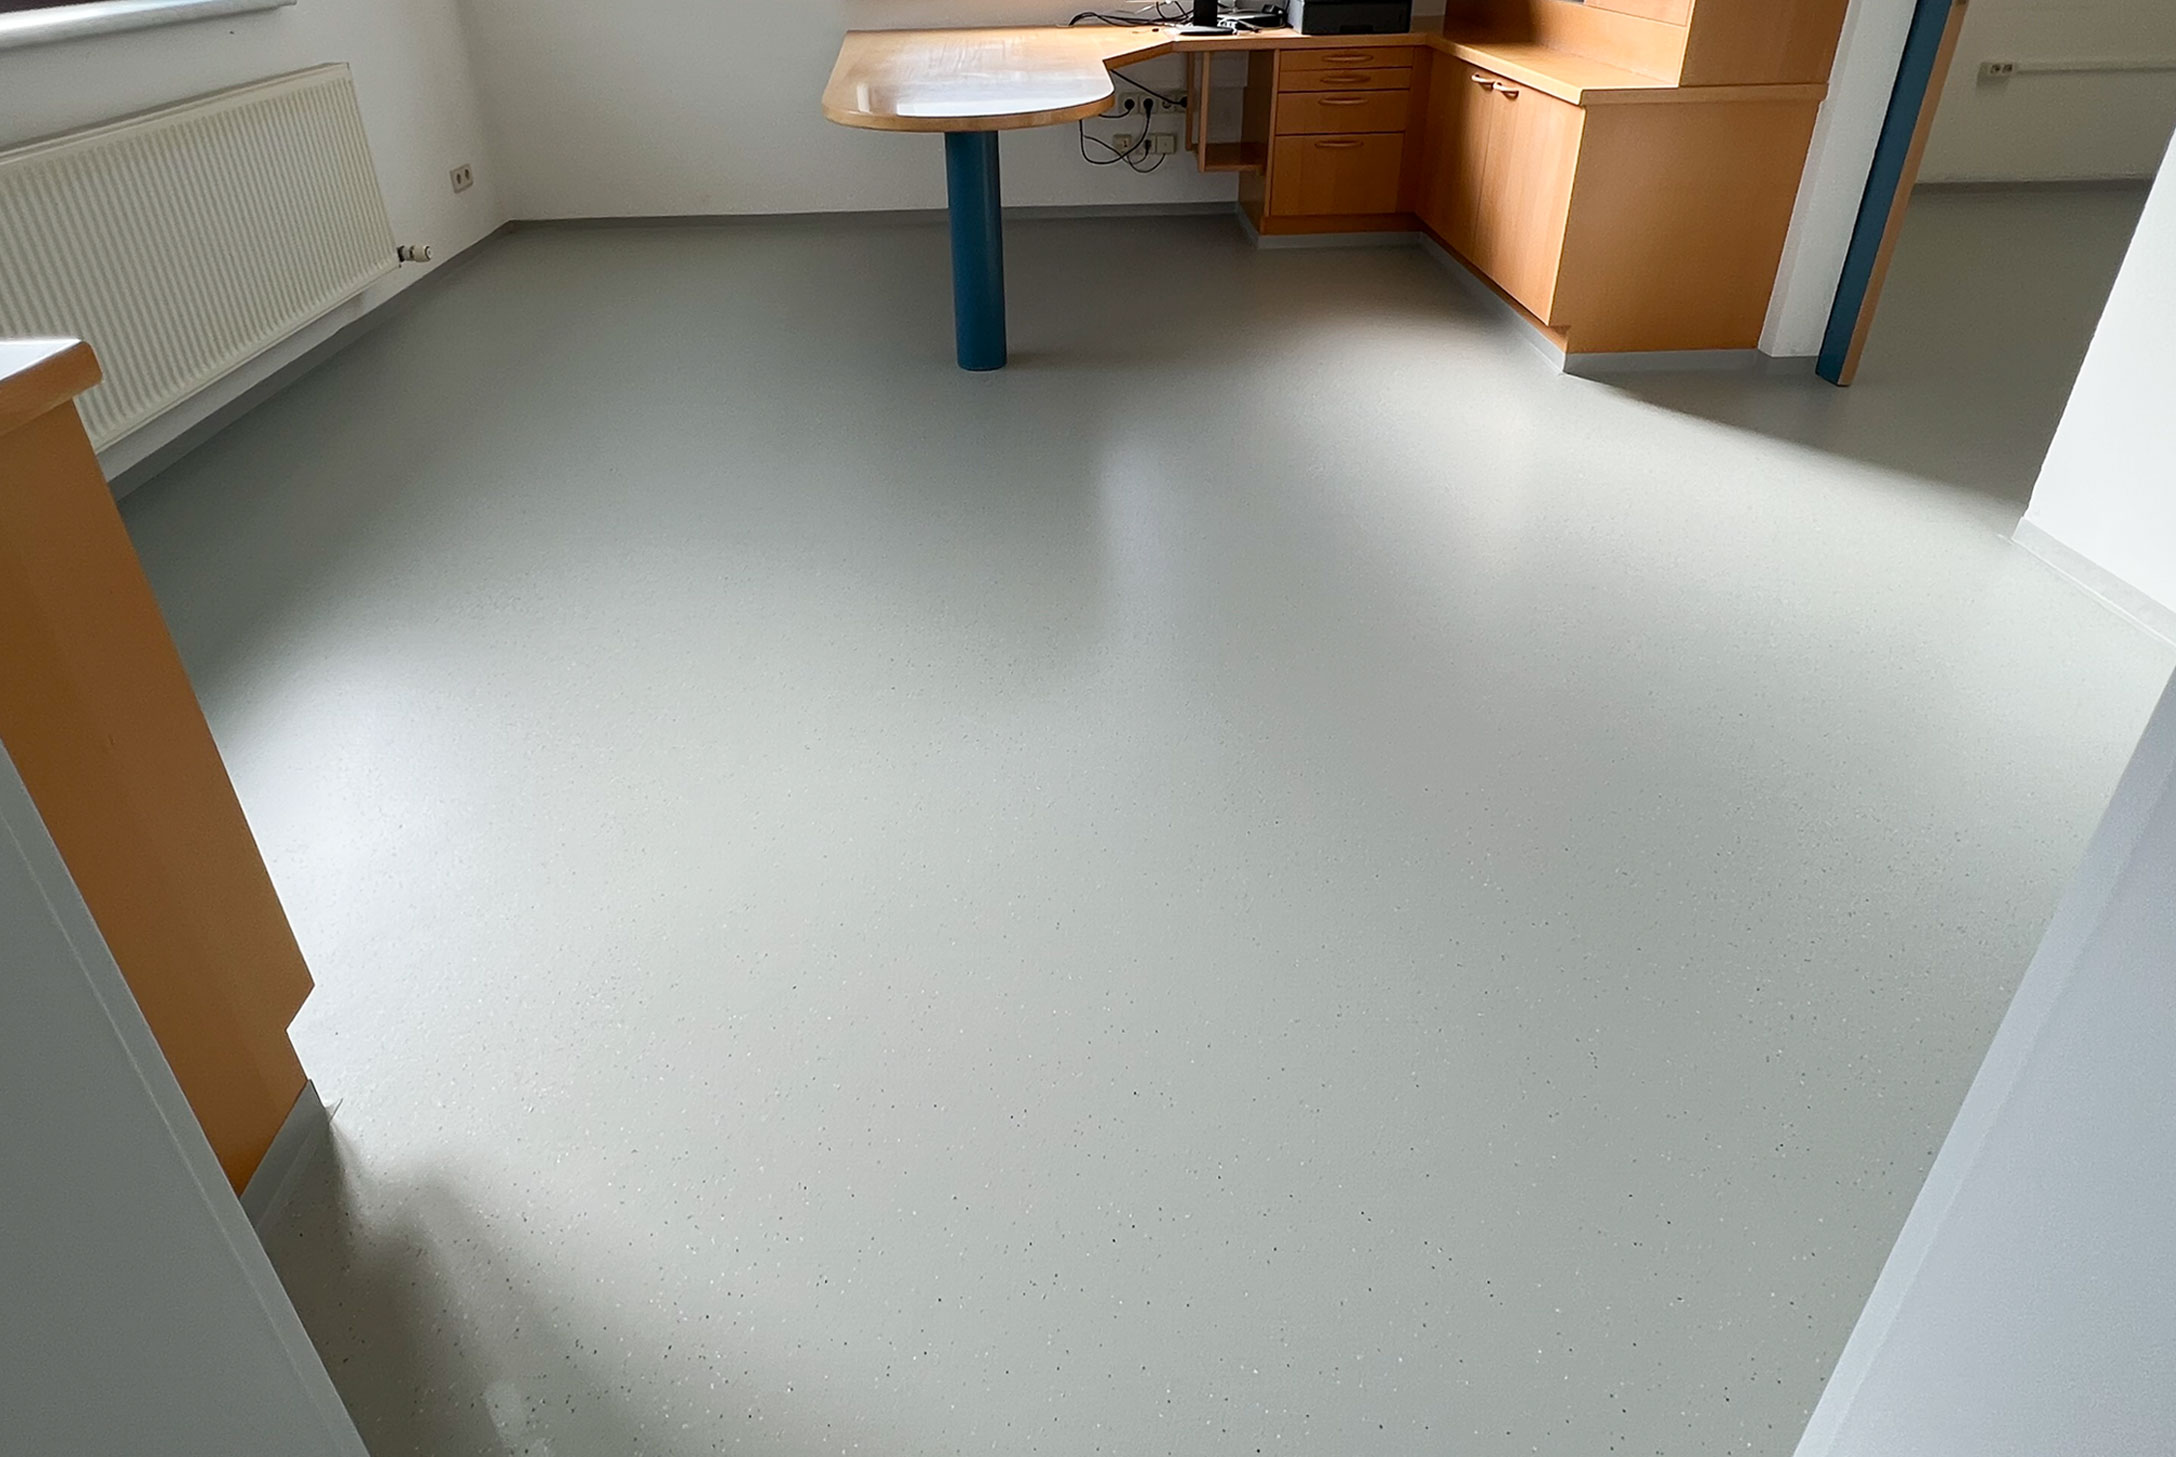 Bild zeigt frisch sanierten grauen Kunststoffboden einer Arztpraxis